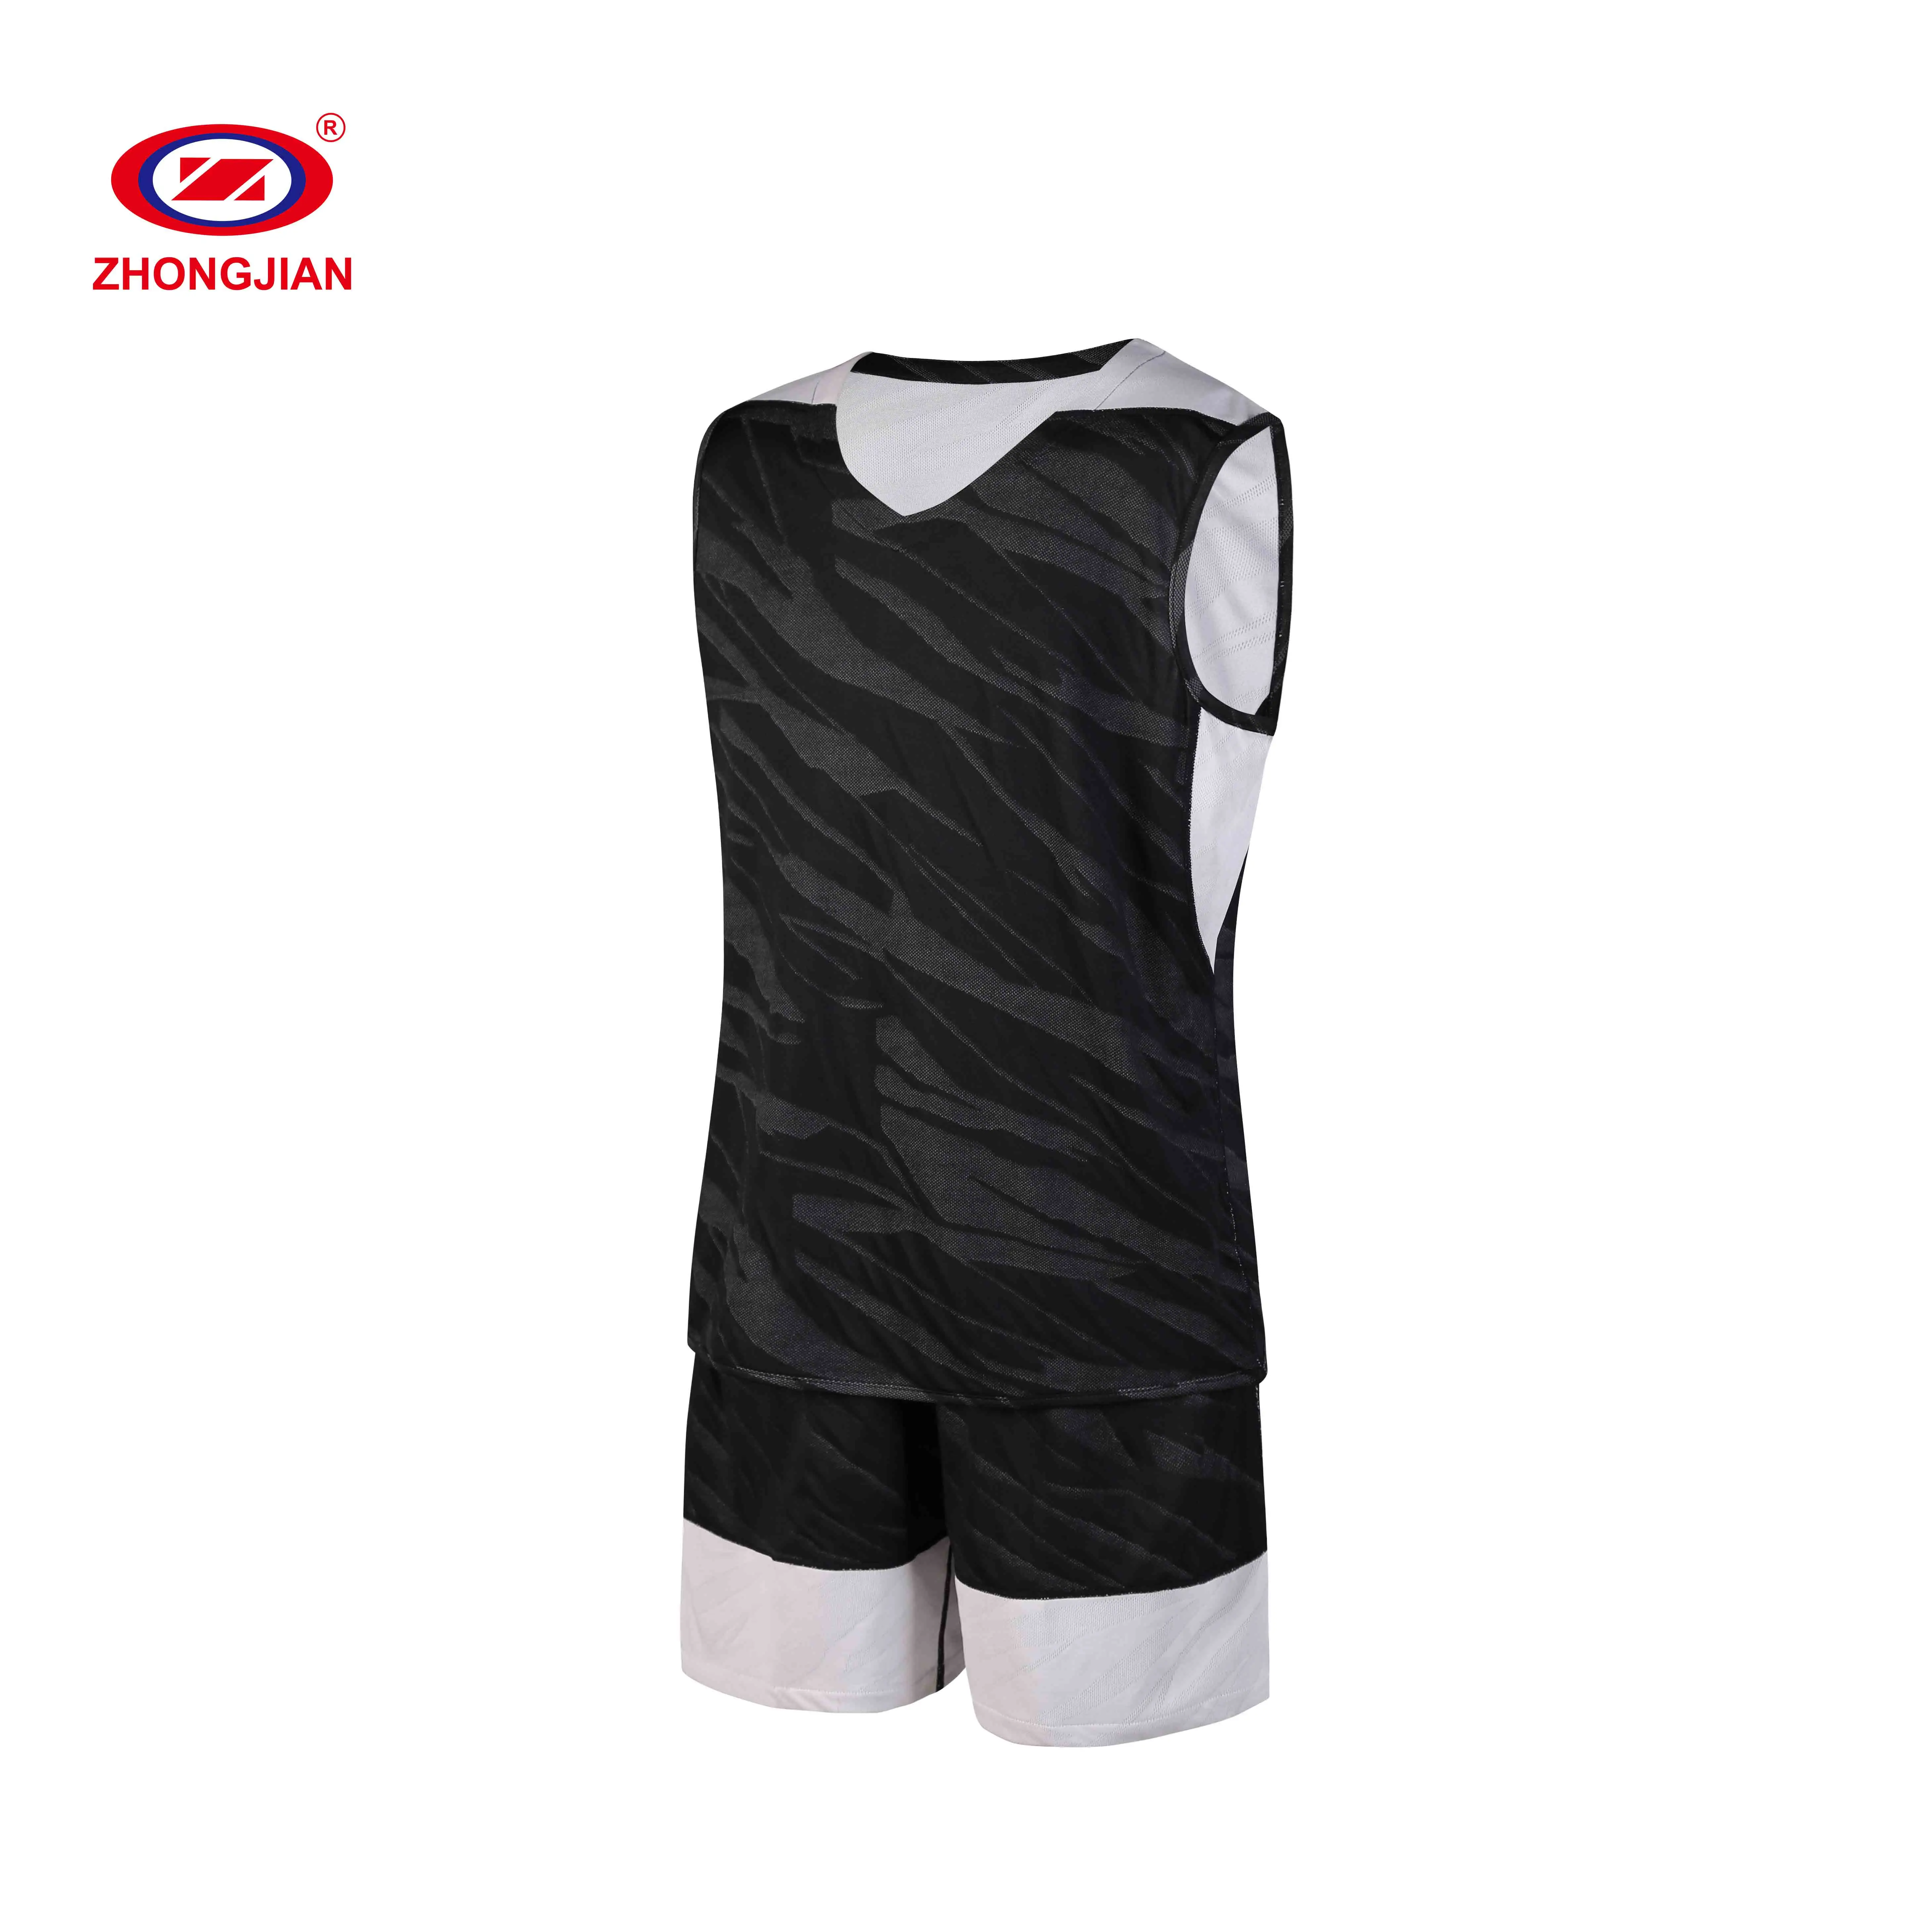 Reversible deporte Conjunto jersey doble lados usan en blanco traje uniformes para el equipo de baloncesto